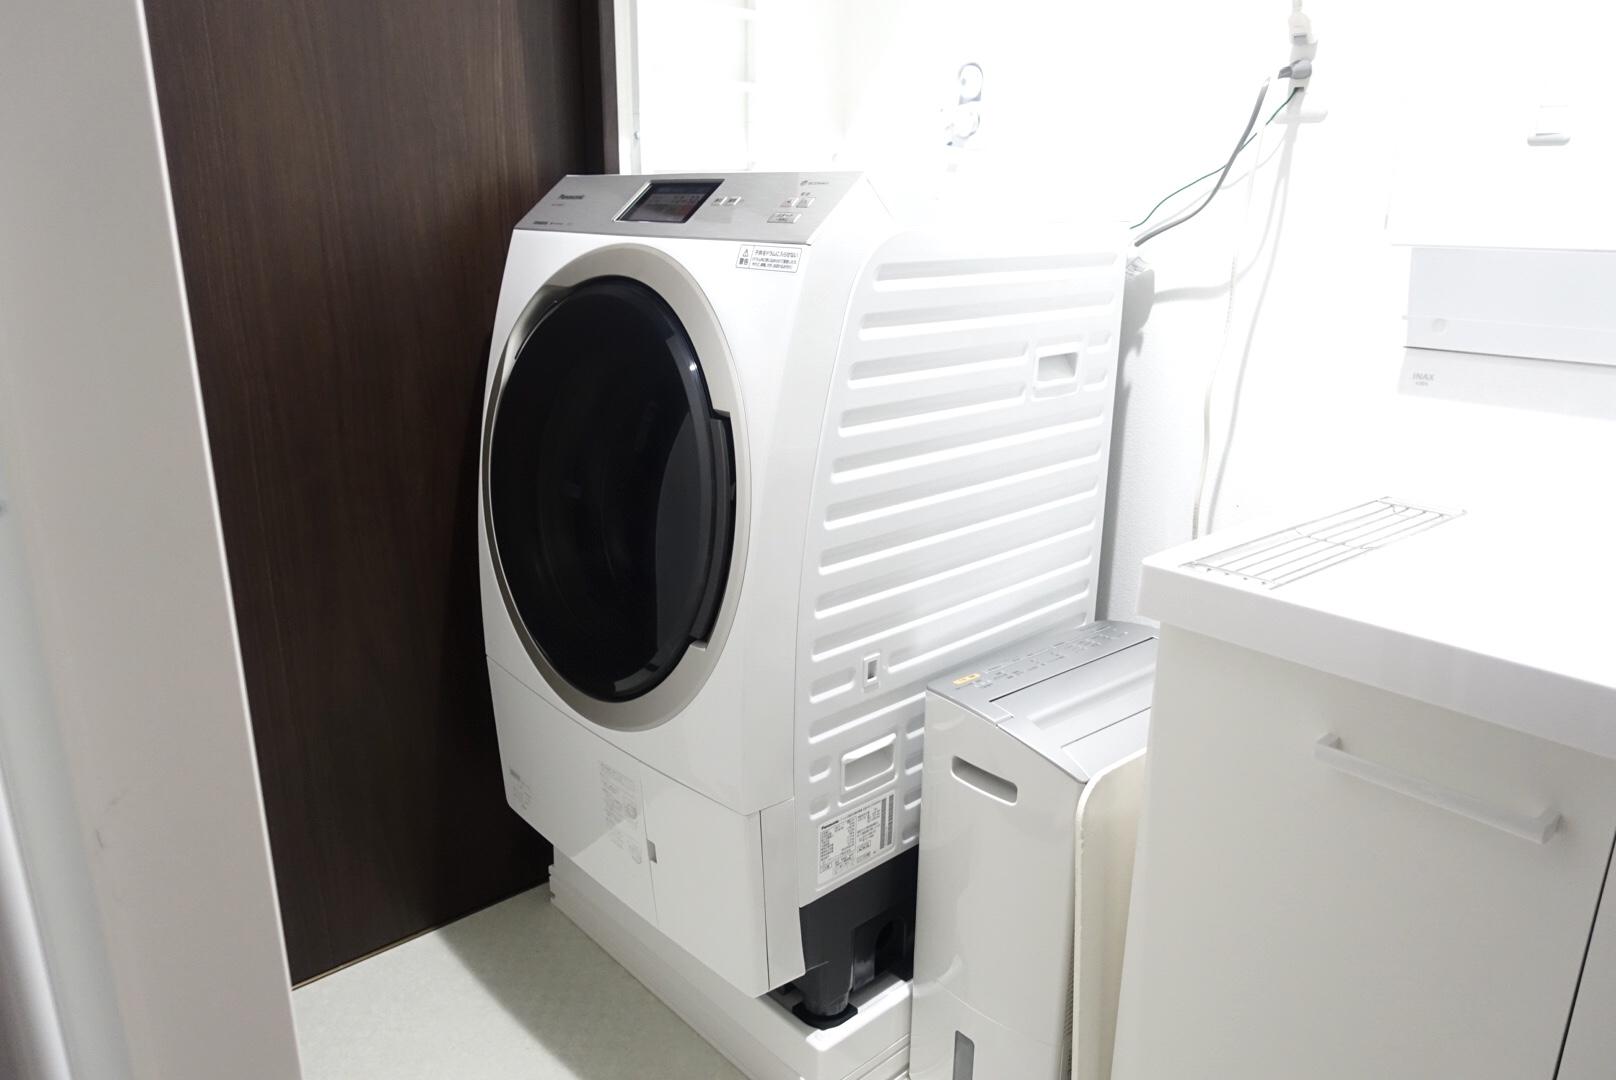 Panasonic ドラム型洗濯機 NA-VX900AR 右開き smcint.com